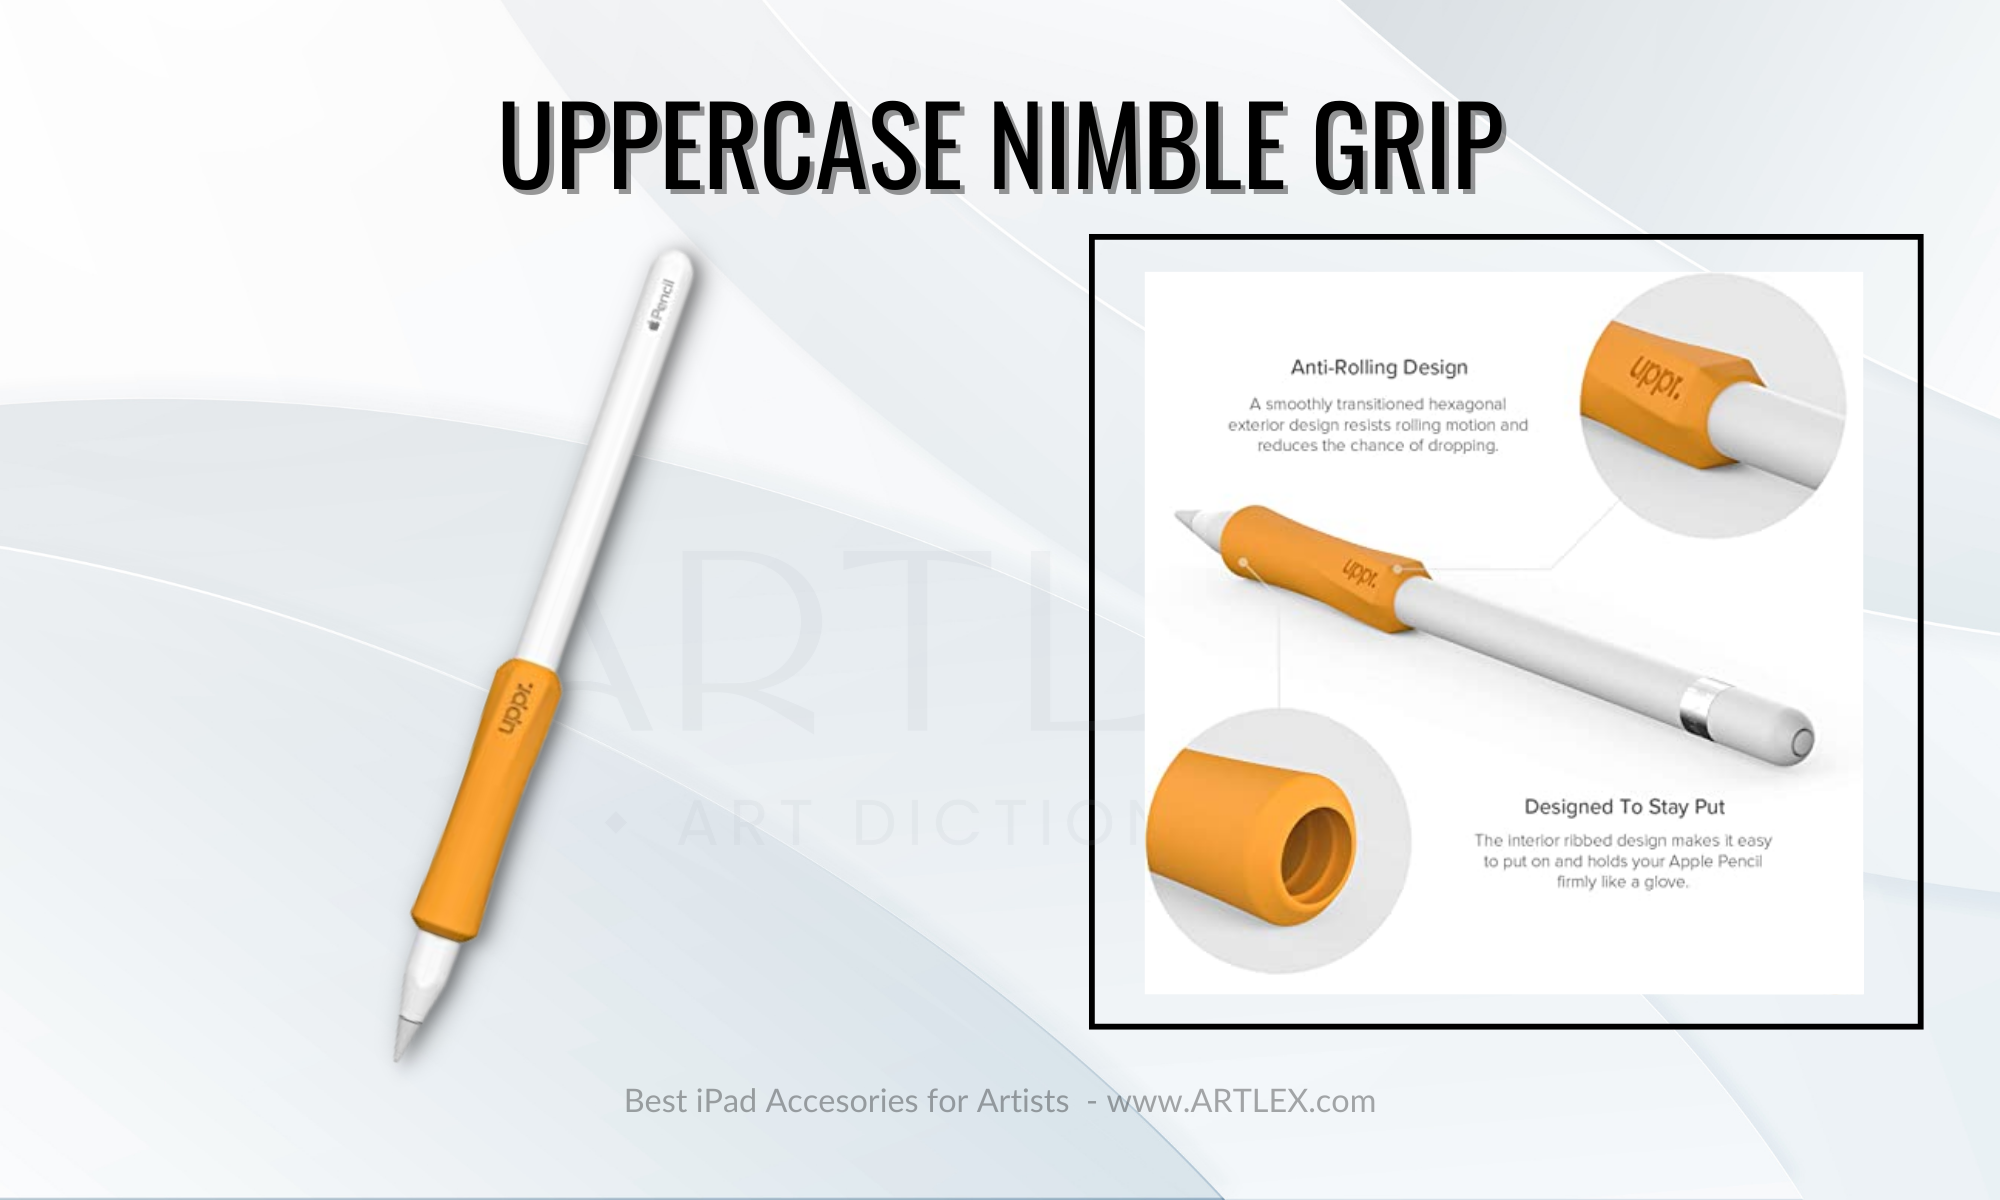 Meilleure prise pour l'Apple Pencil 1ère génération - Uppercase Nimble Grip